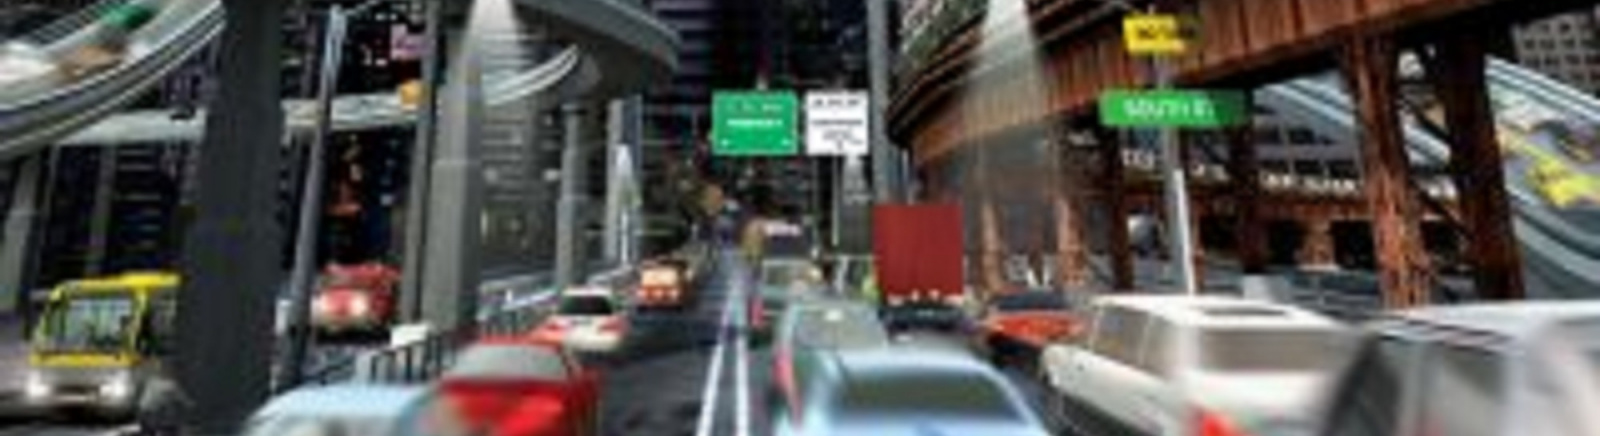 Дата выхода SimCity 4: Rush Hour  на PC и Mac в России и во всем мире